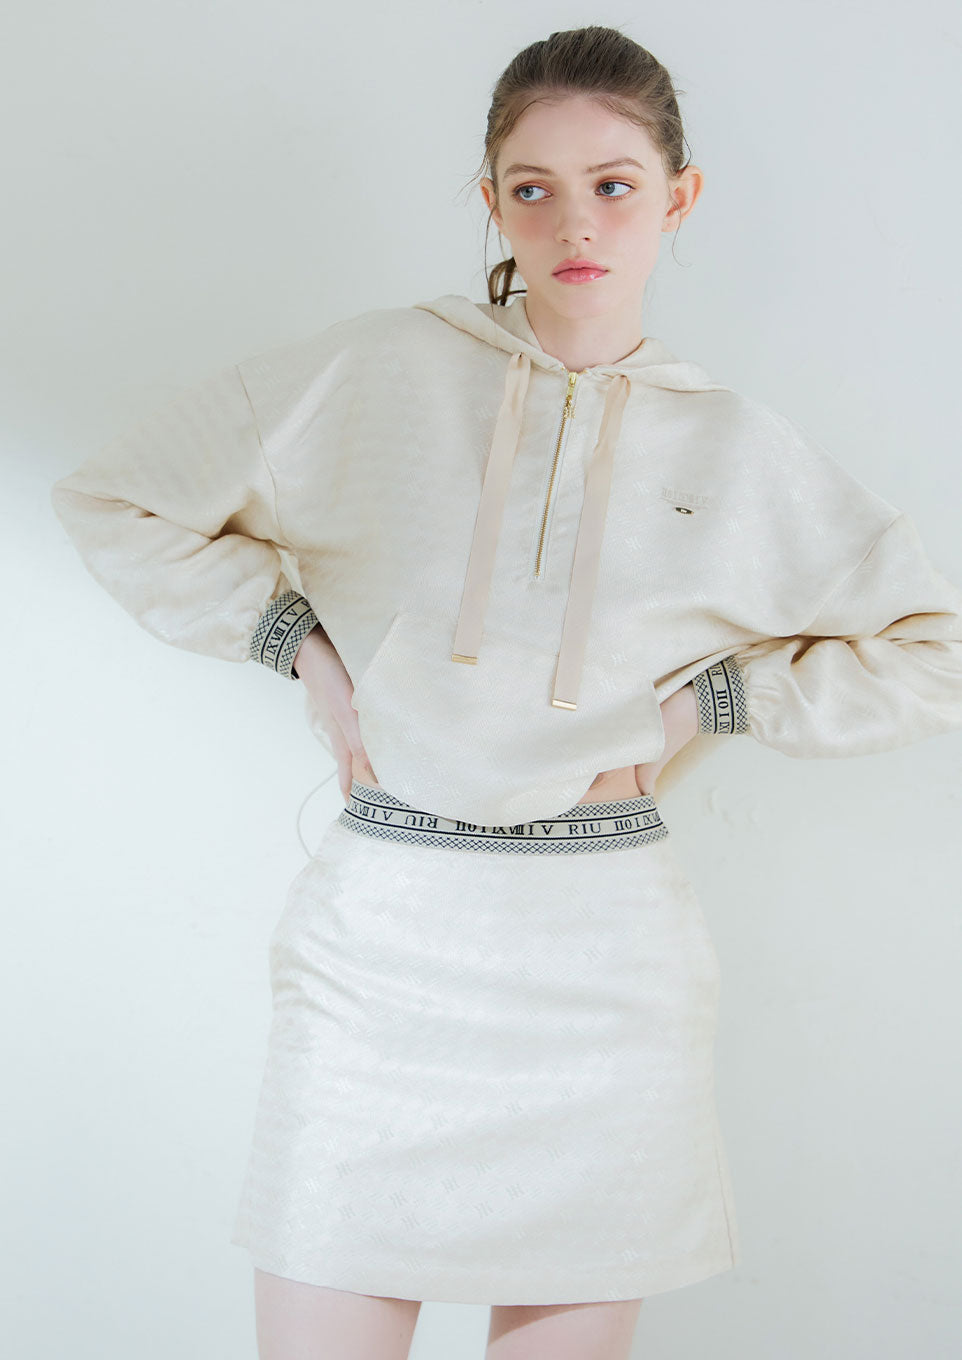 Monogram jacquard pullover×short skirt